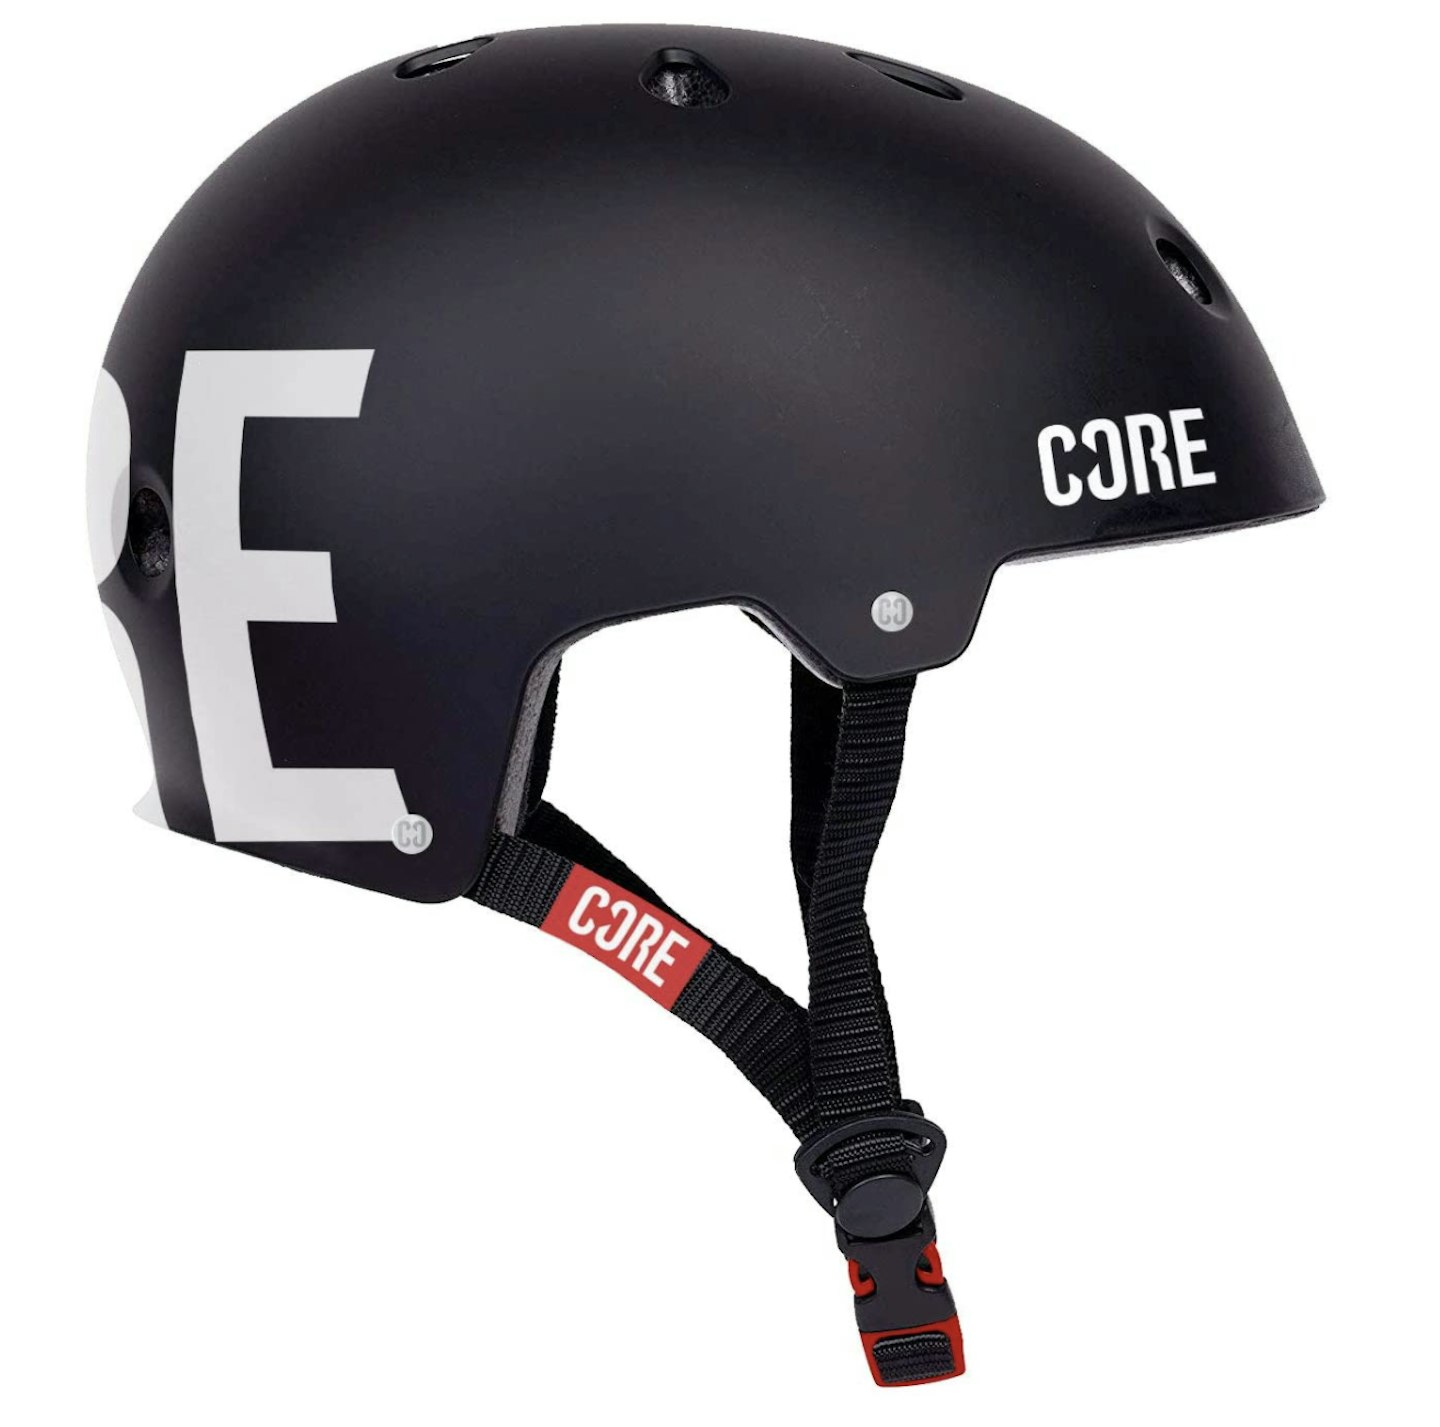 Core Protection Helmet